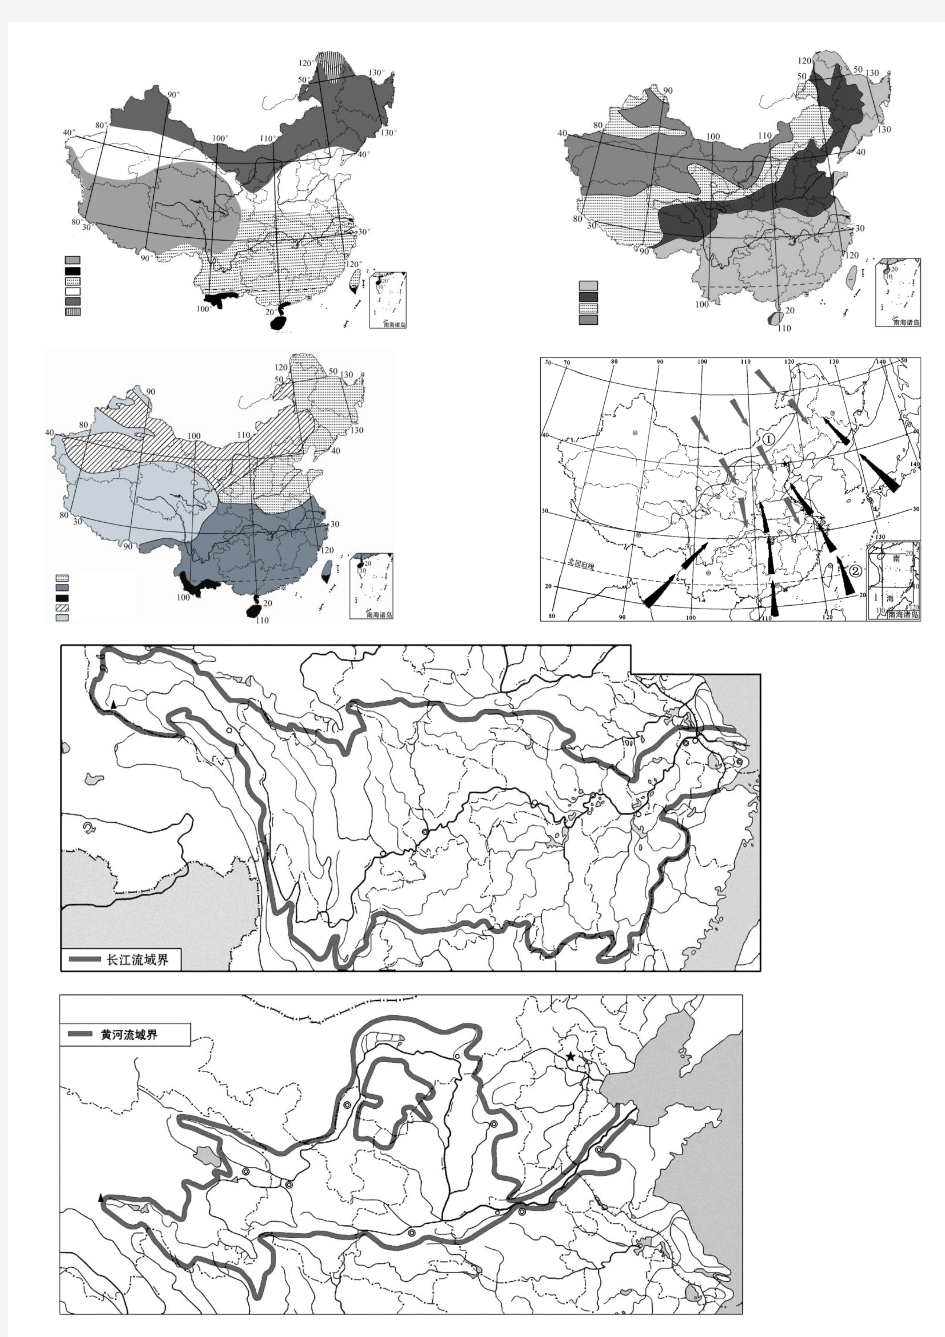 中国地理空白图填图练习